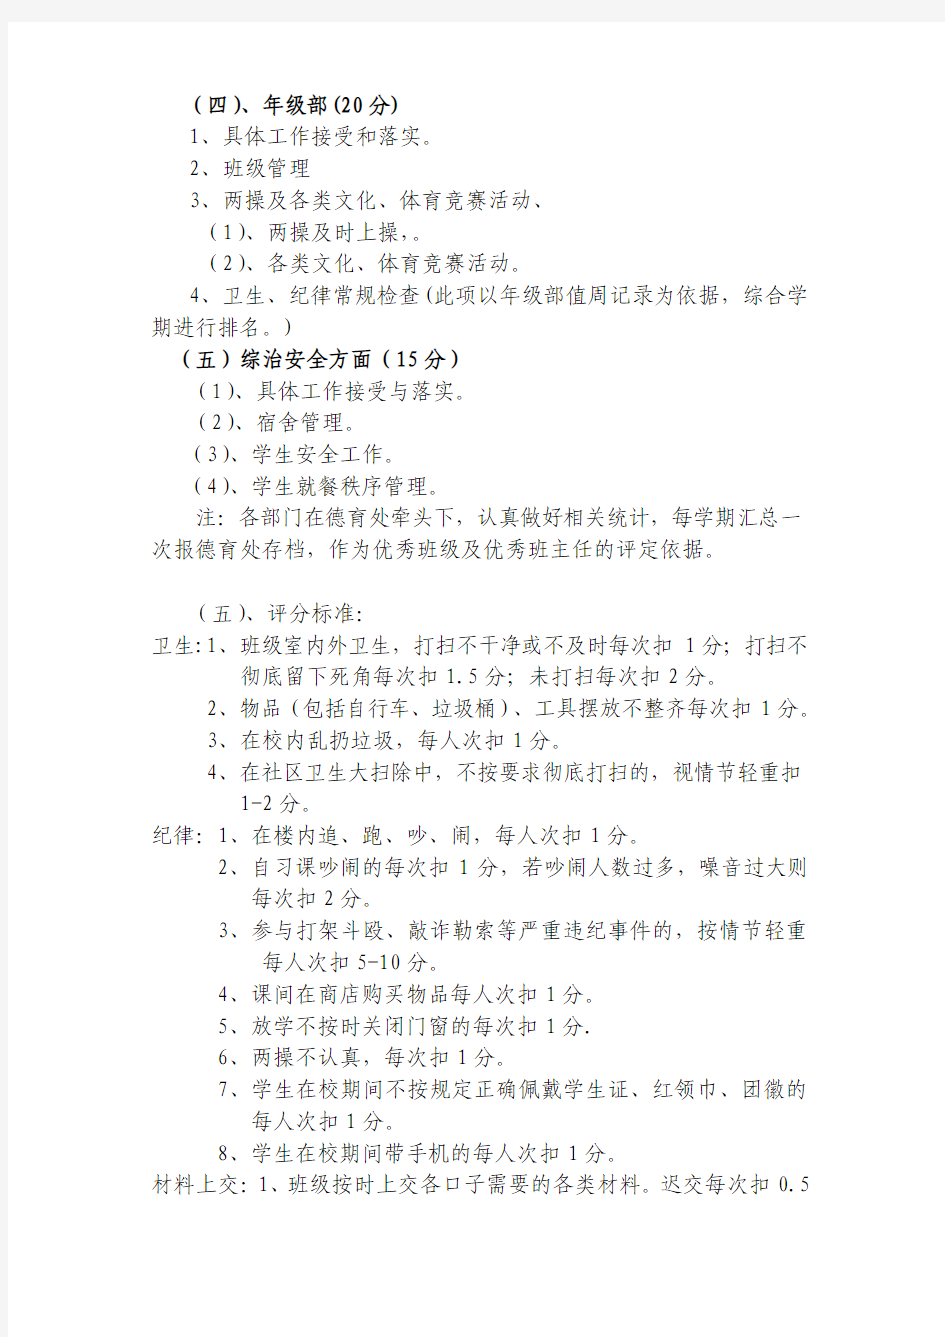 奇台七中班级管理工作绩效考核办法(2013年6月修改稿) 2